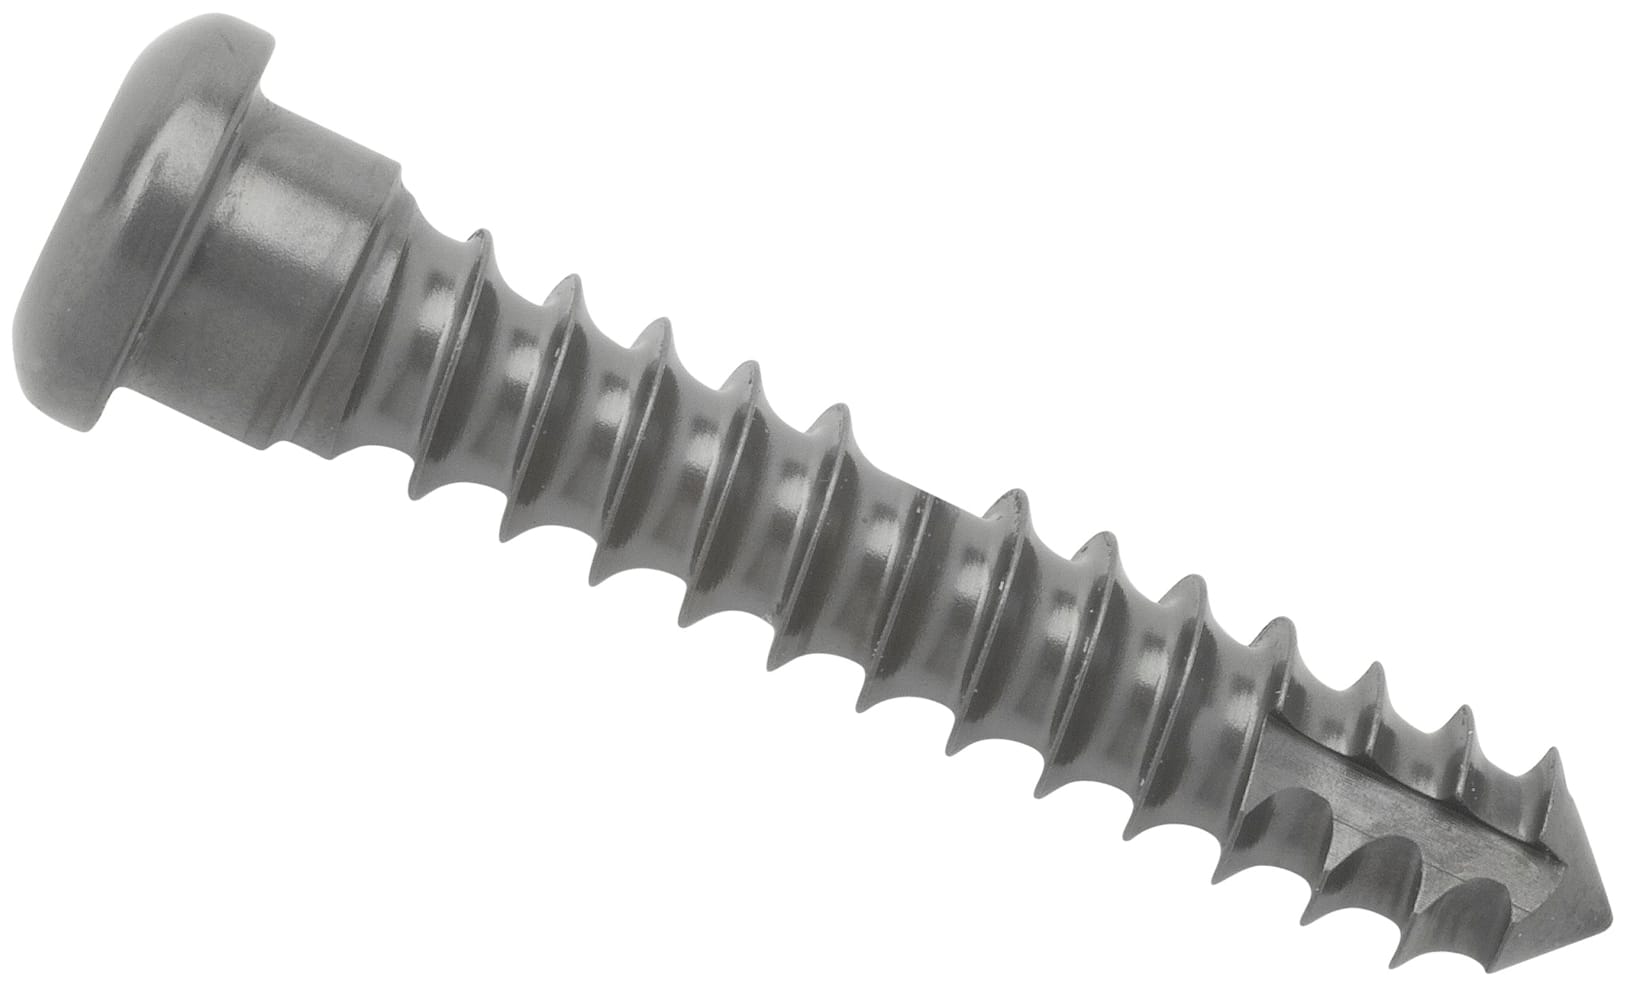 Cortical Screw, 3.5 mm x 16 mm